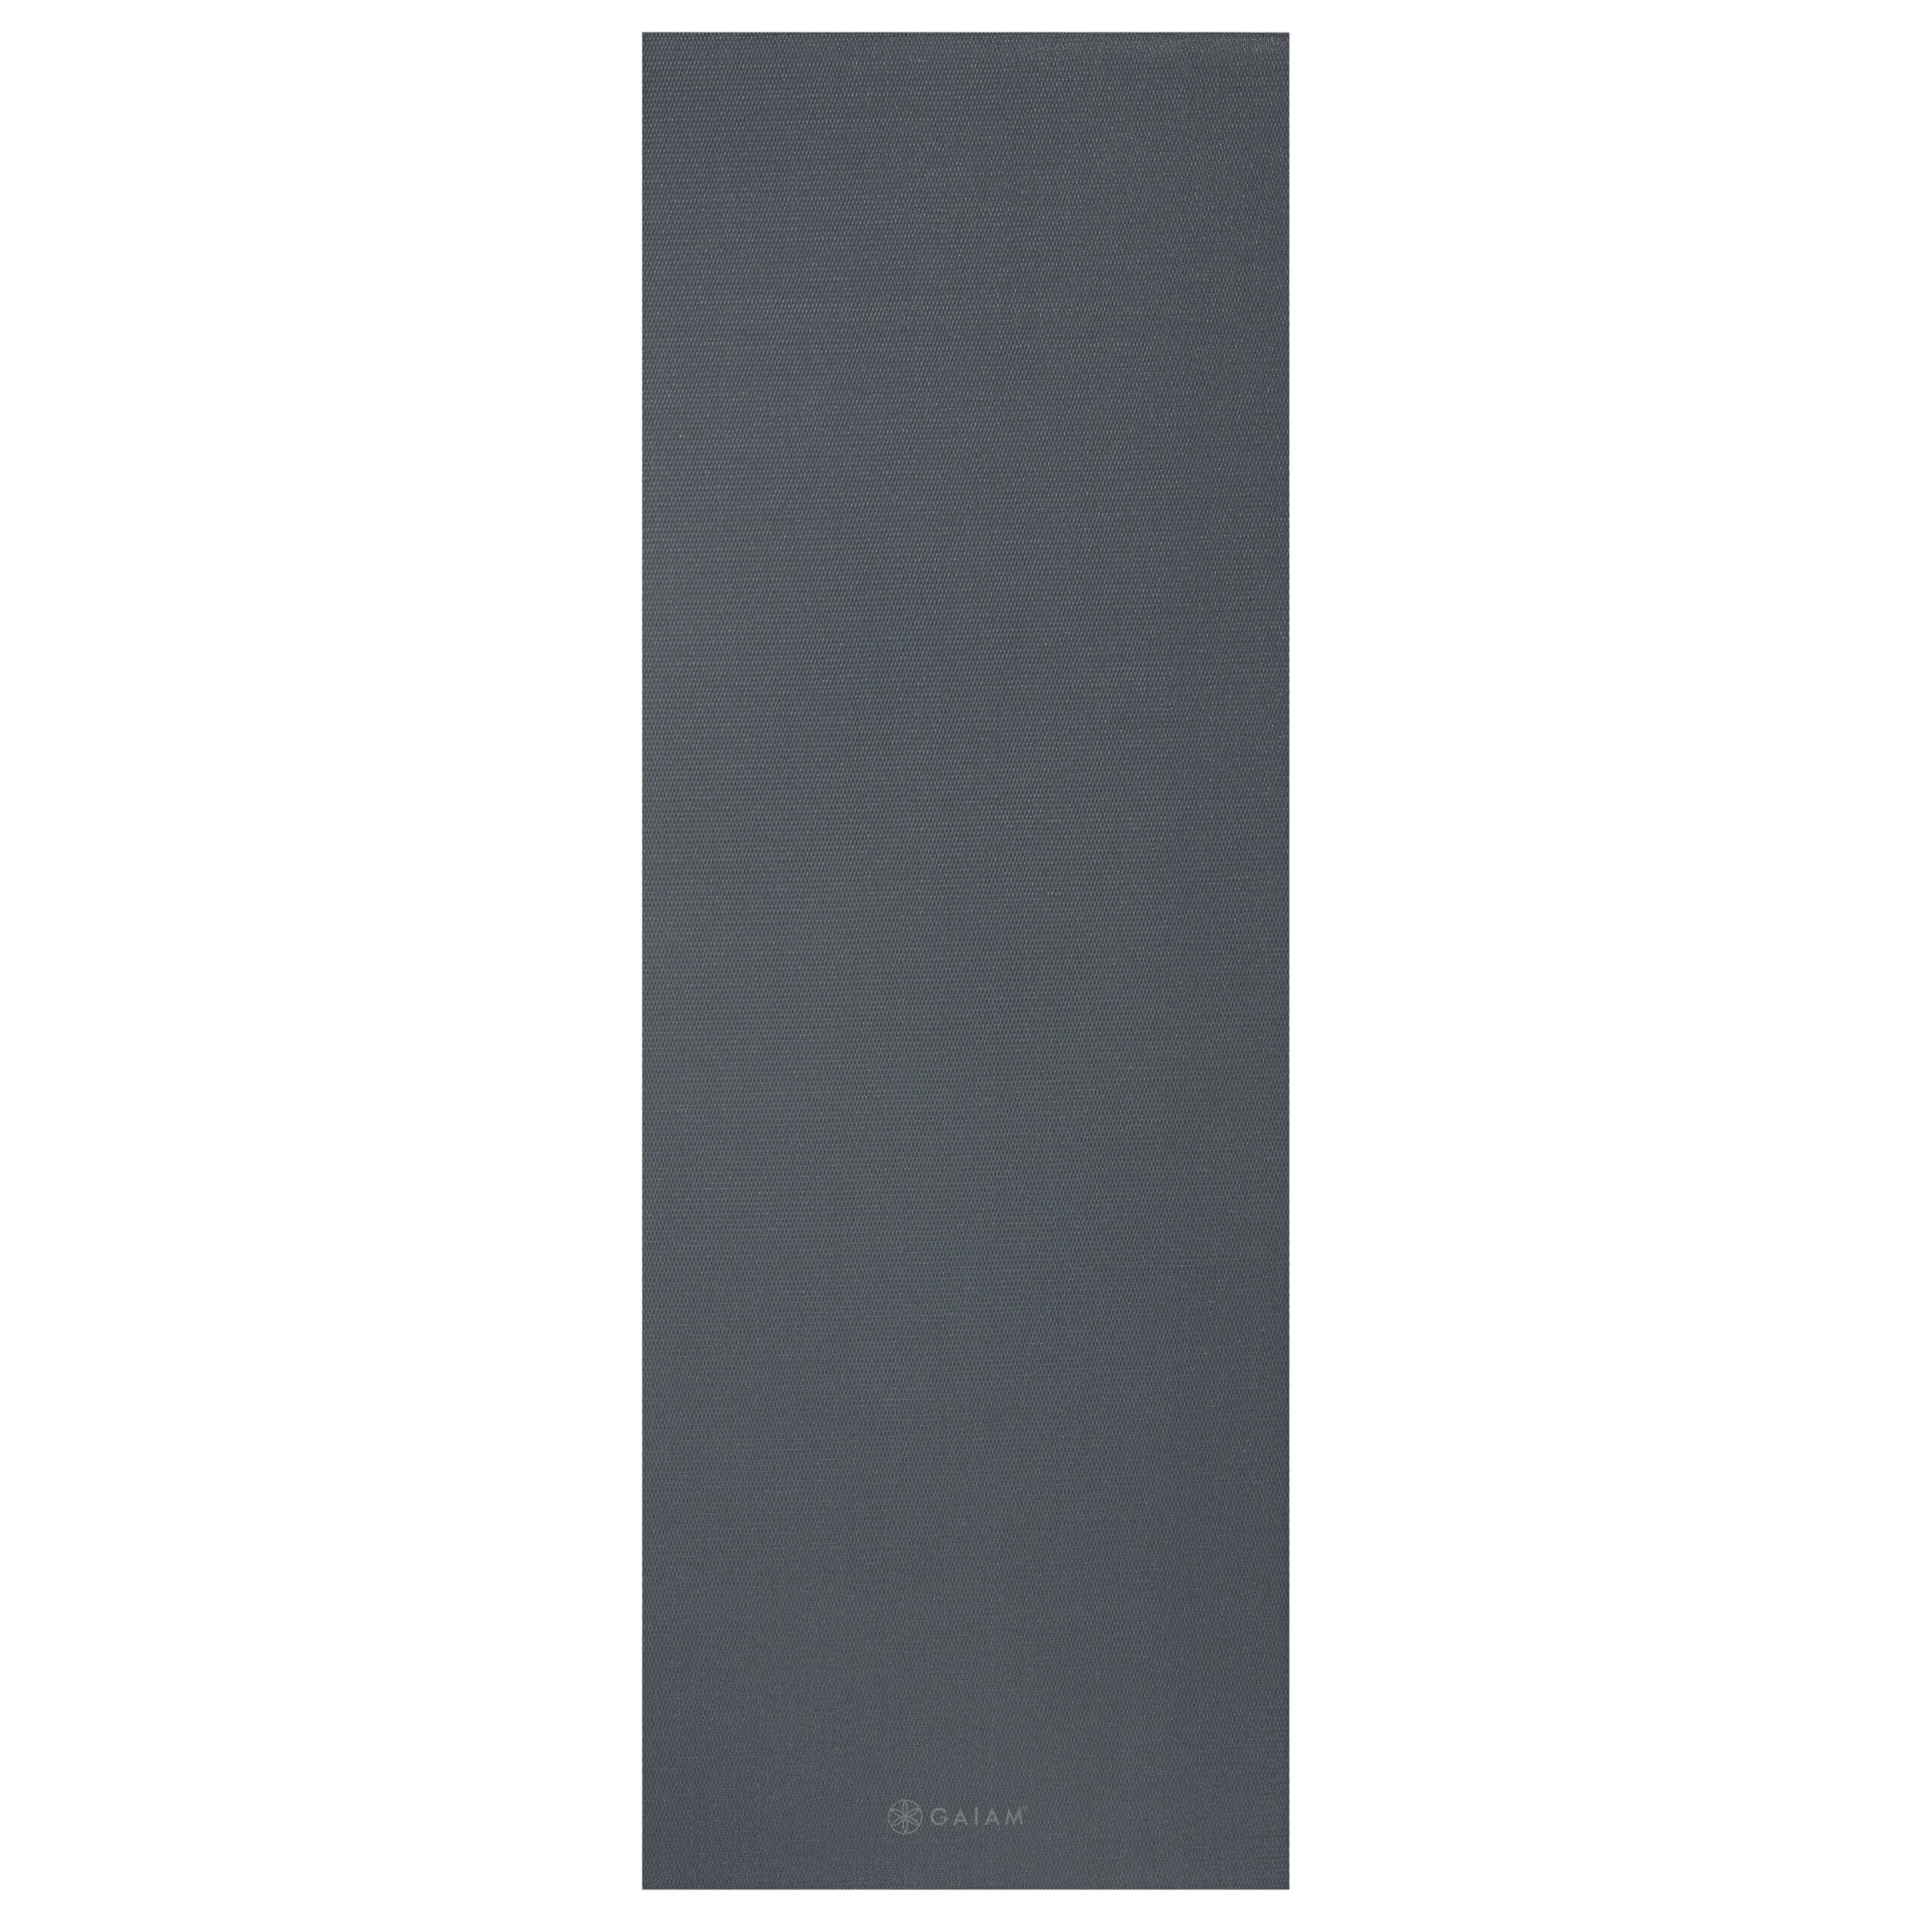 Gaiam Yoga Mat - Folkstone Grey - 4 mm